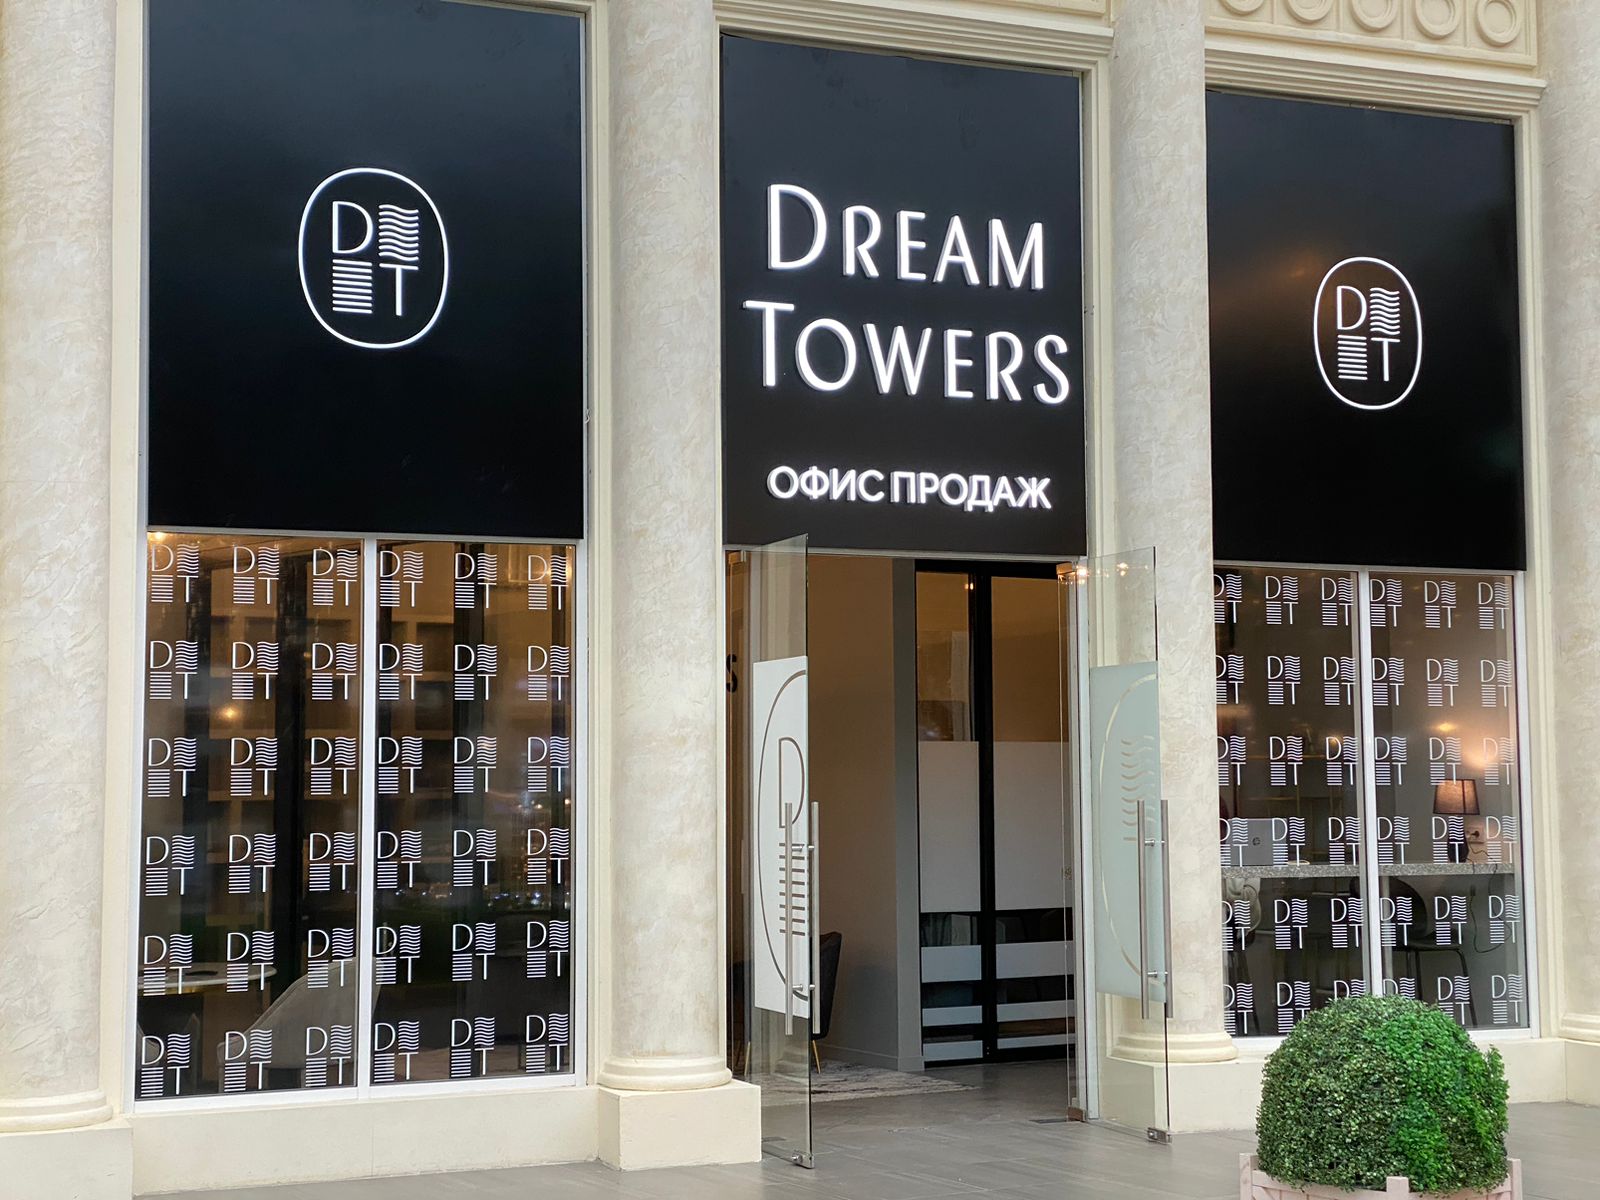 фото: Regions Development: Офис продаж ЖК Dream Towers переехал в «Остров мечты»